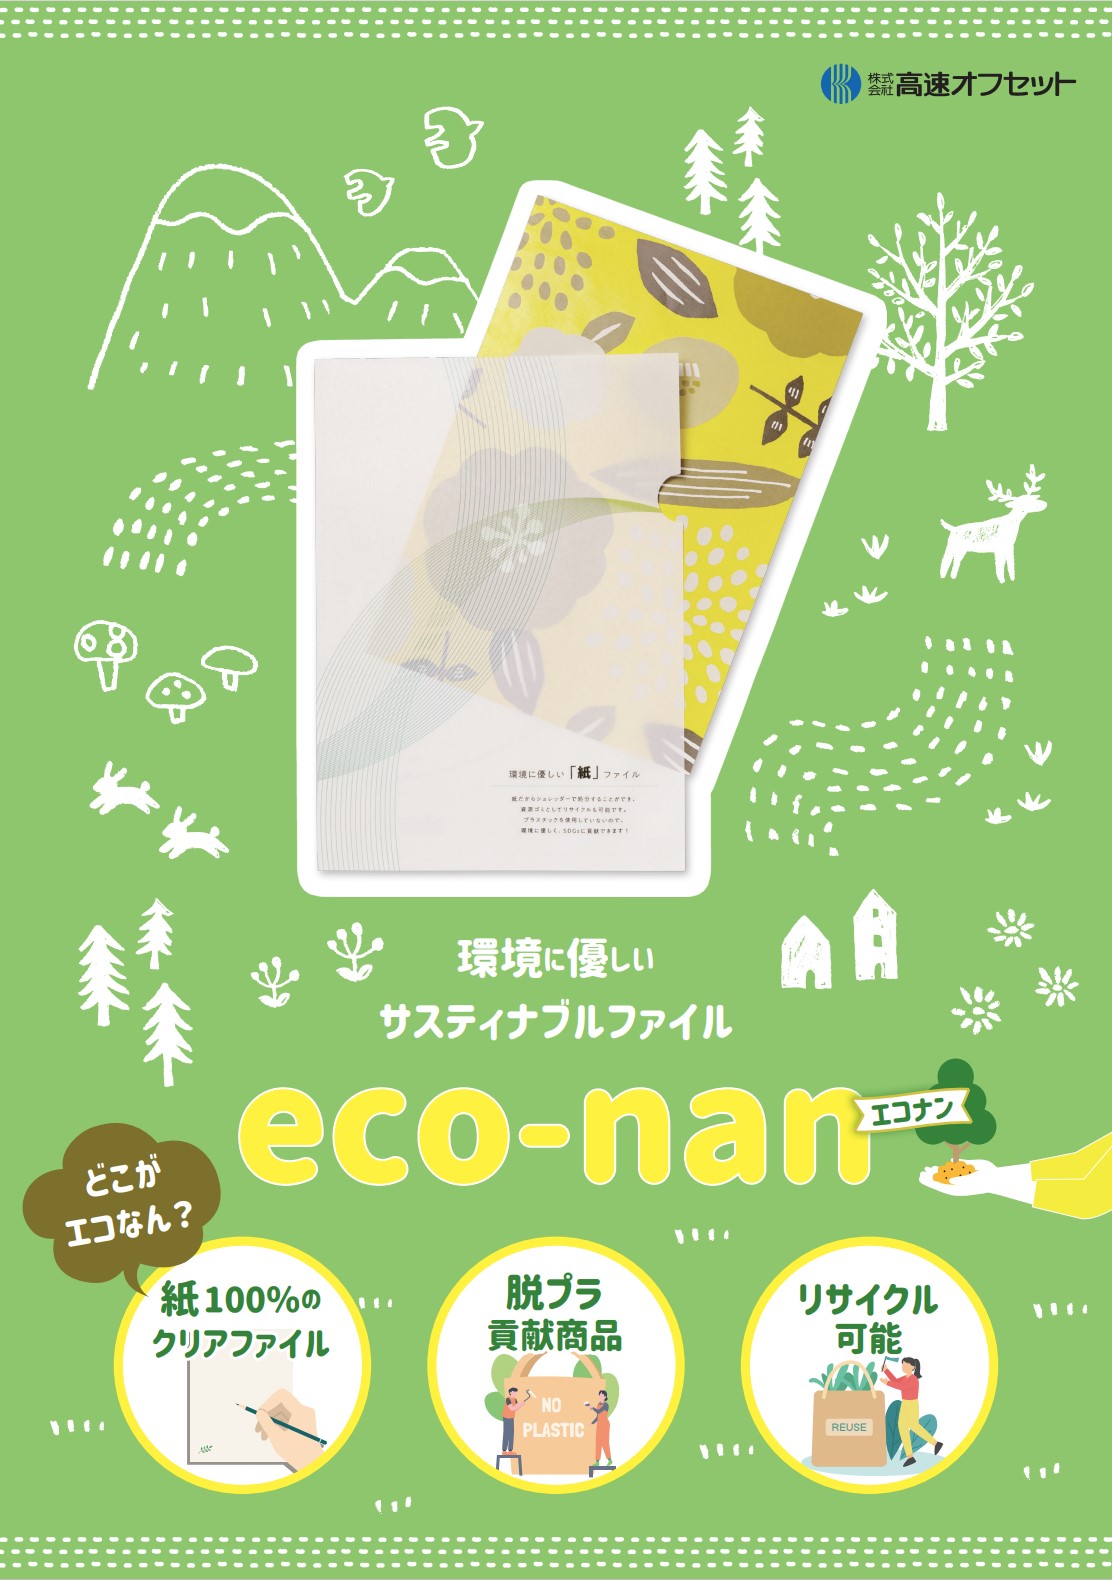 【eco-nan エコナン】環境にやさしいサスティナブルファイル